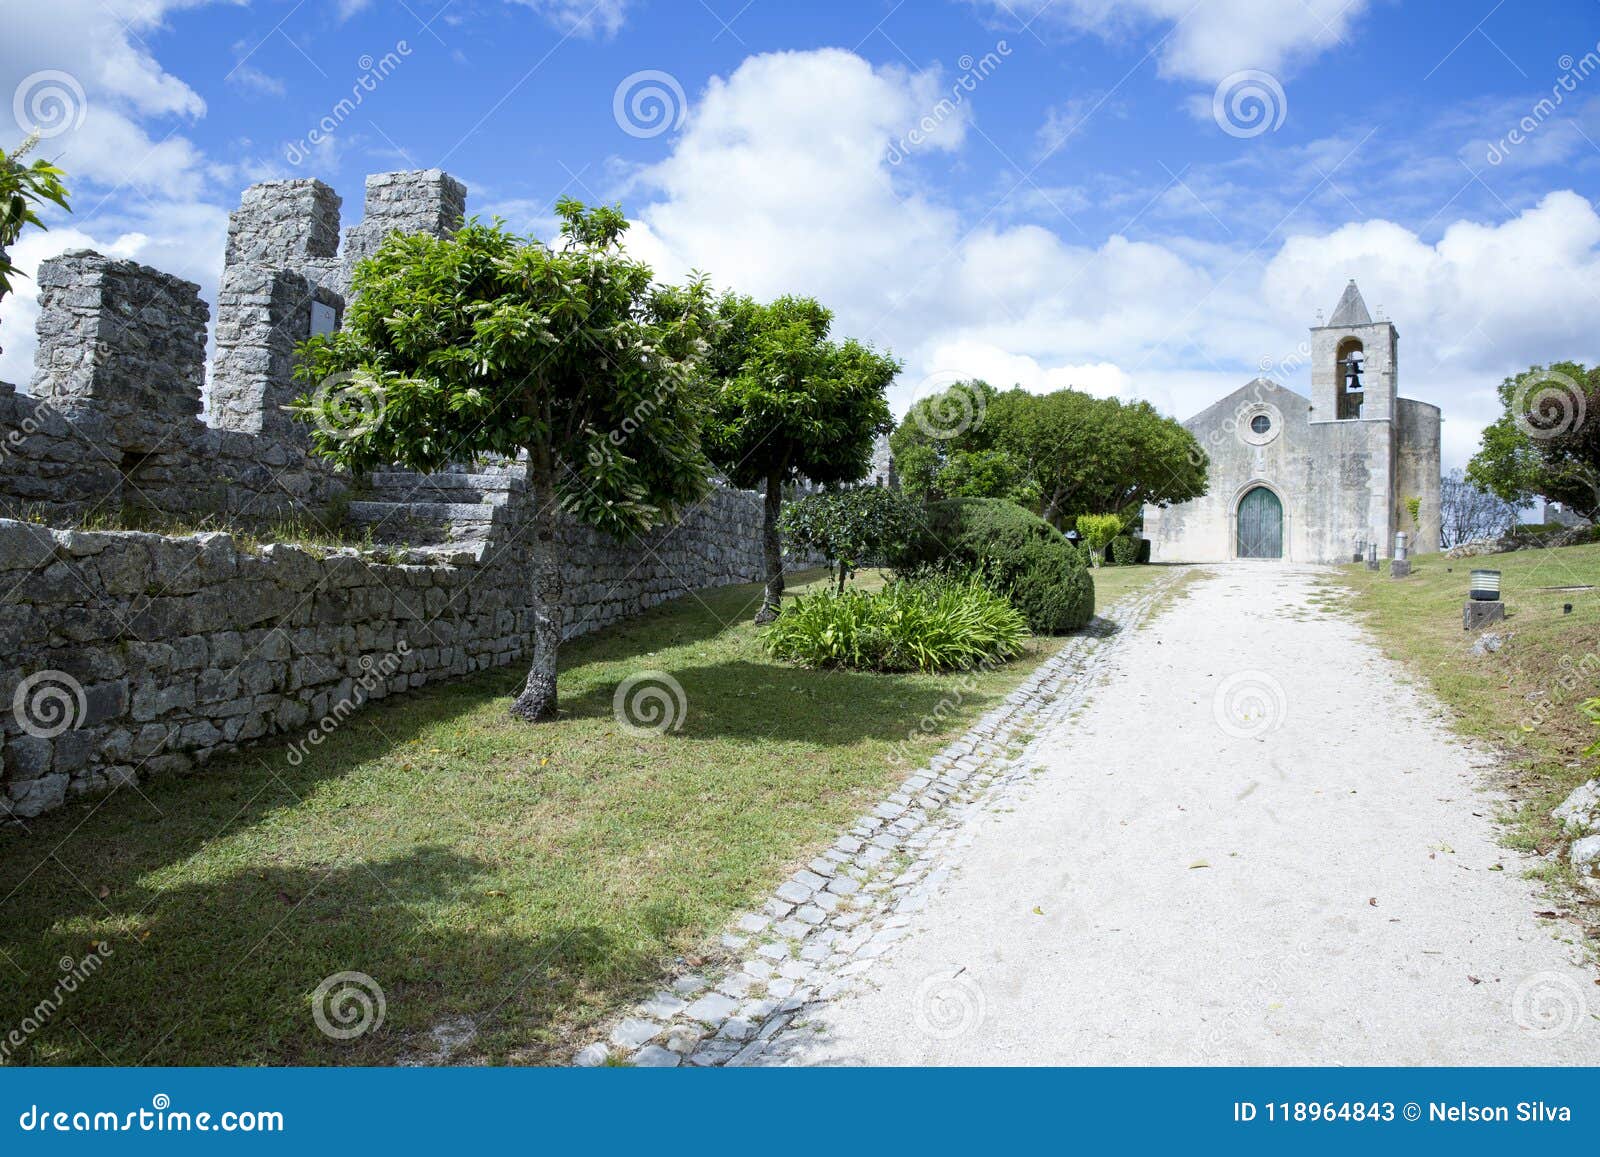 montemor-o-velho castle, in portugal